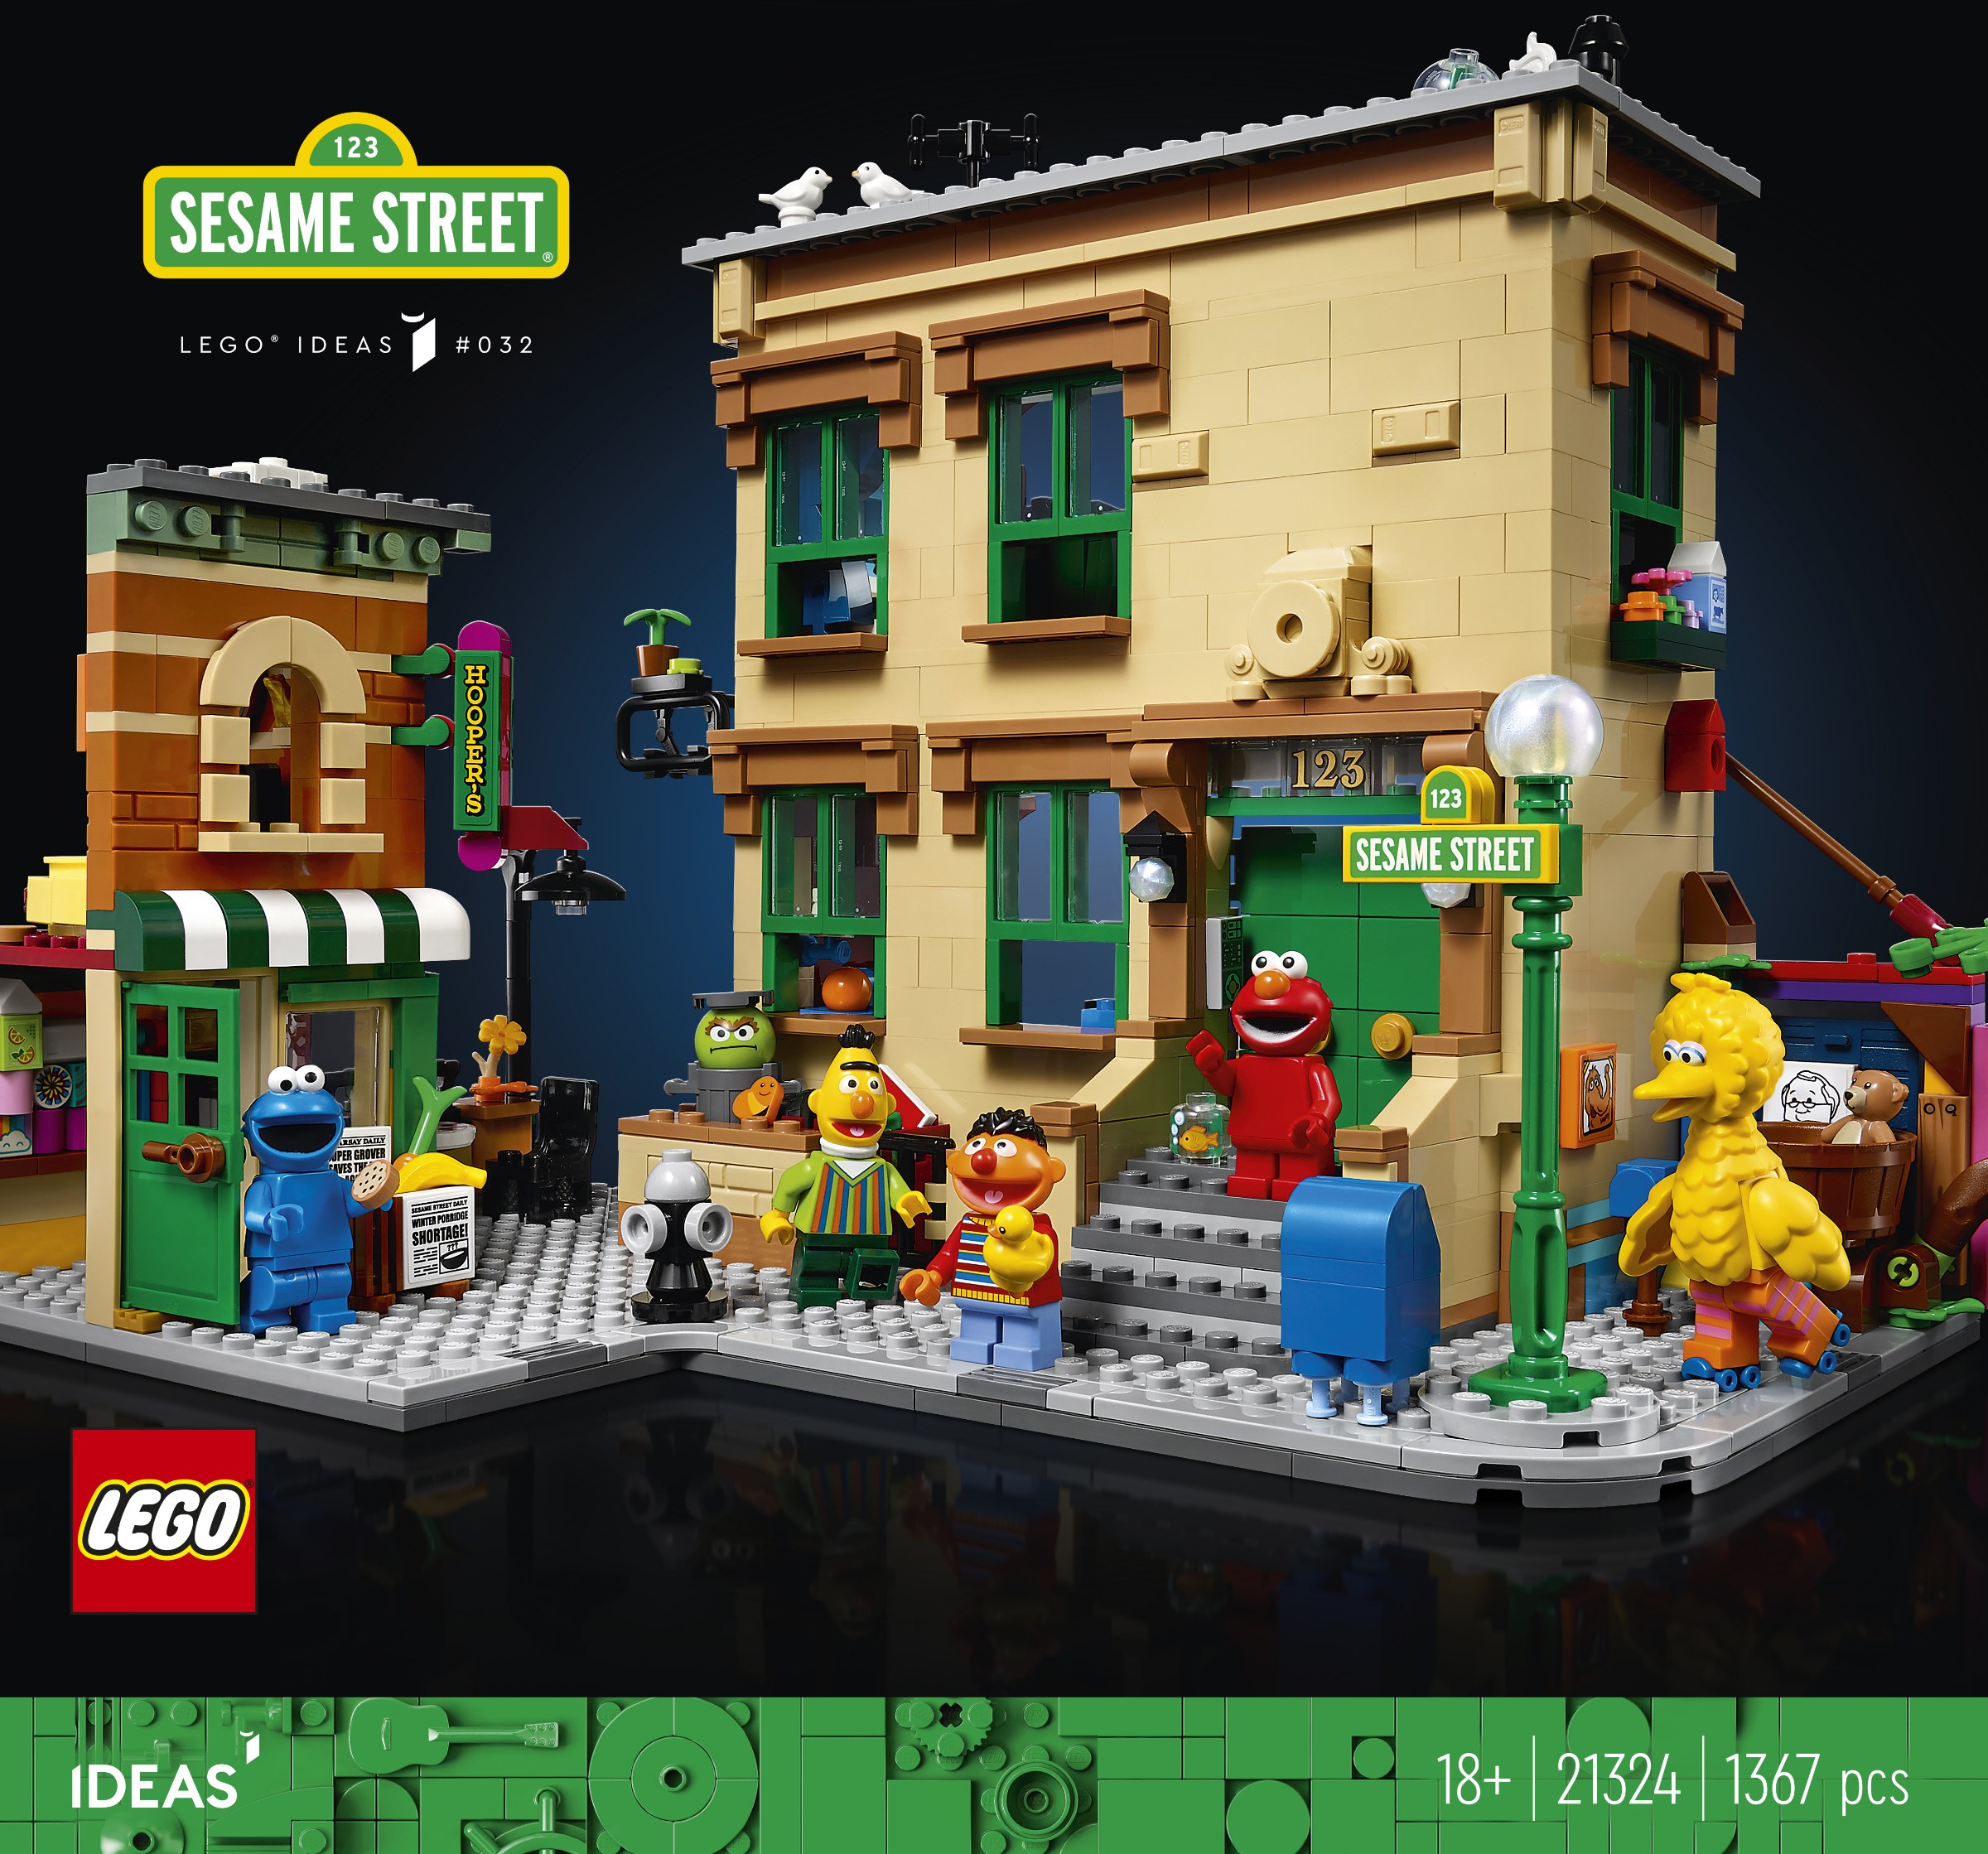 Box art for LEGO 123 Sesame Street set.